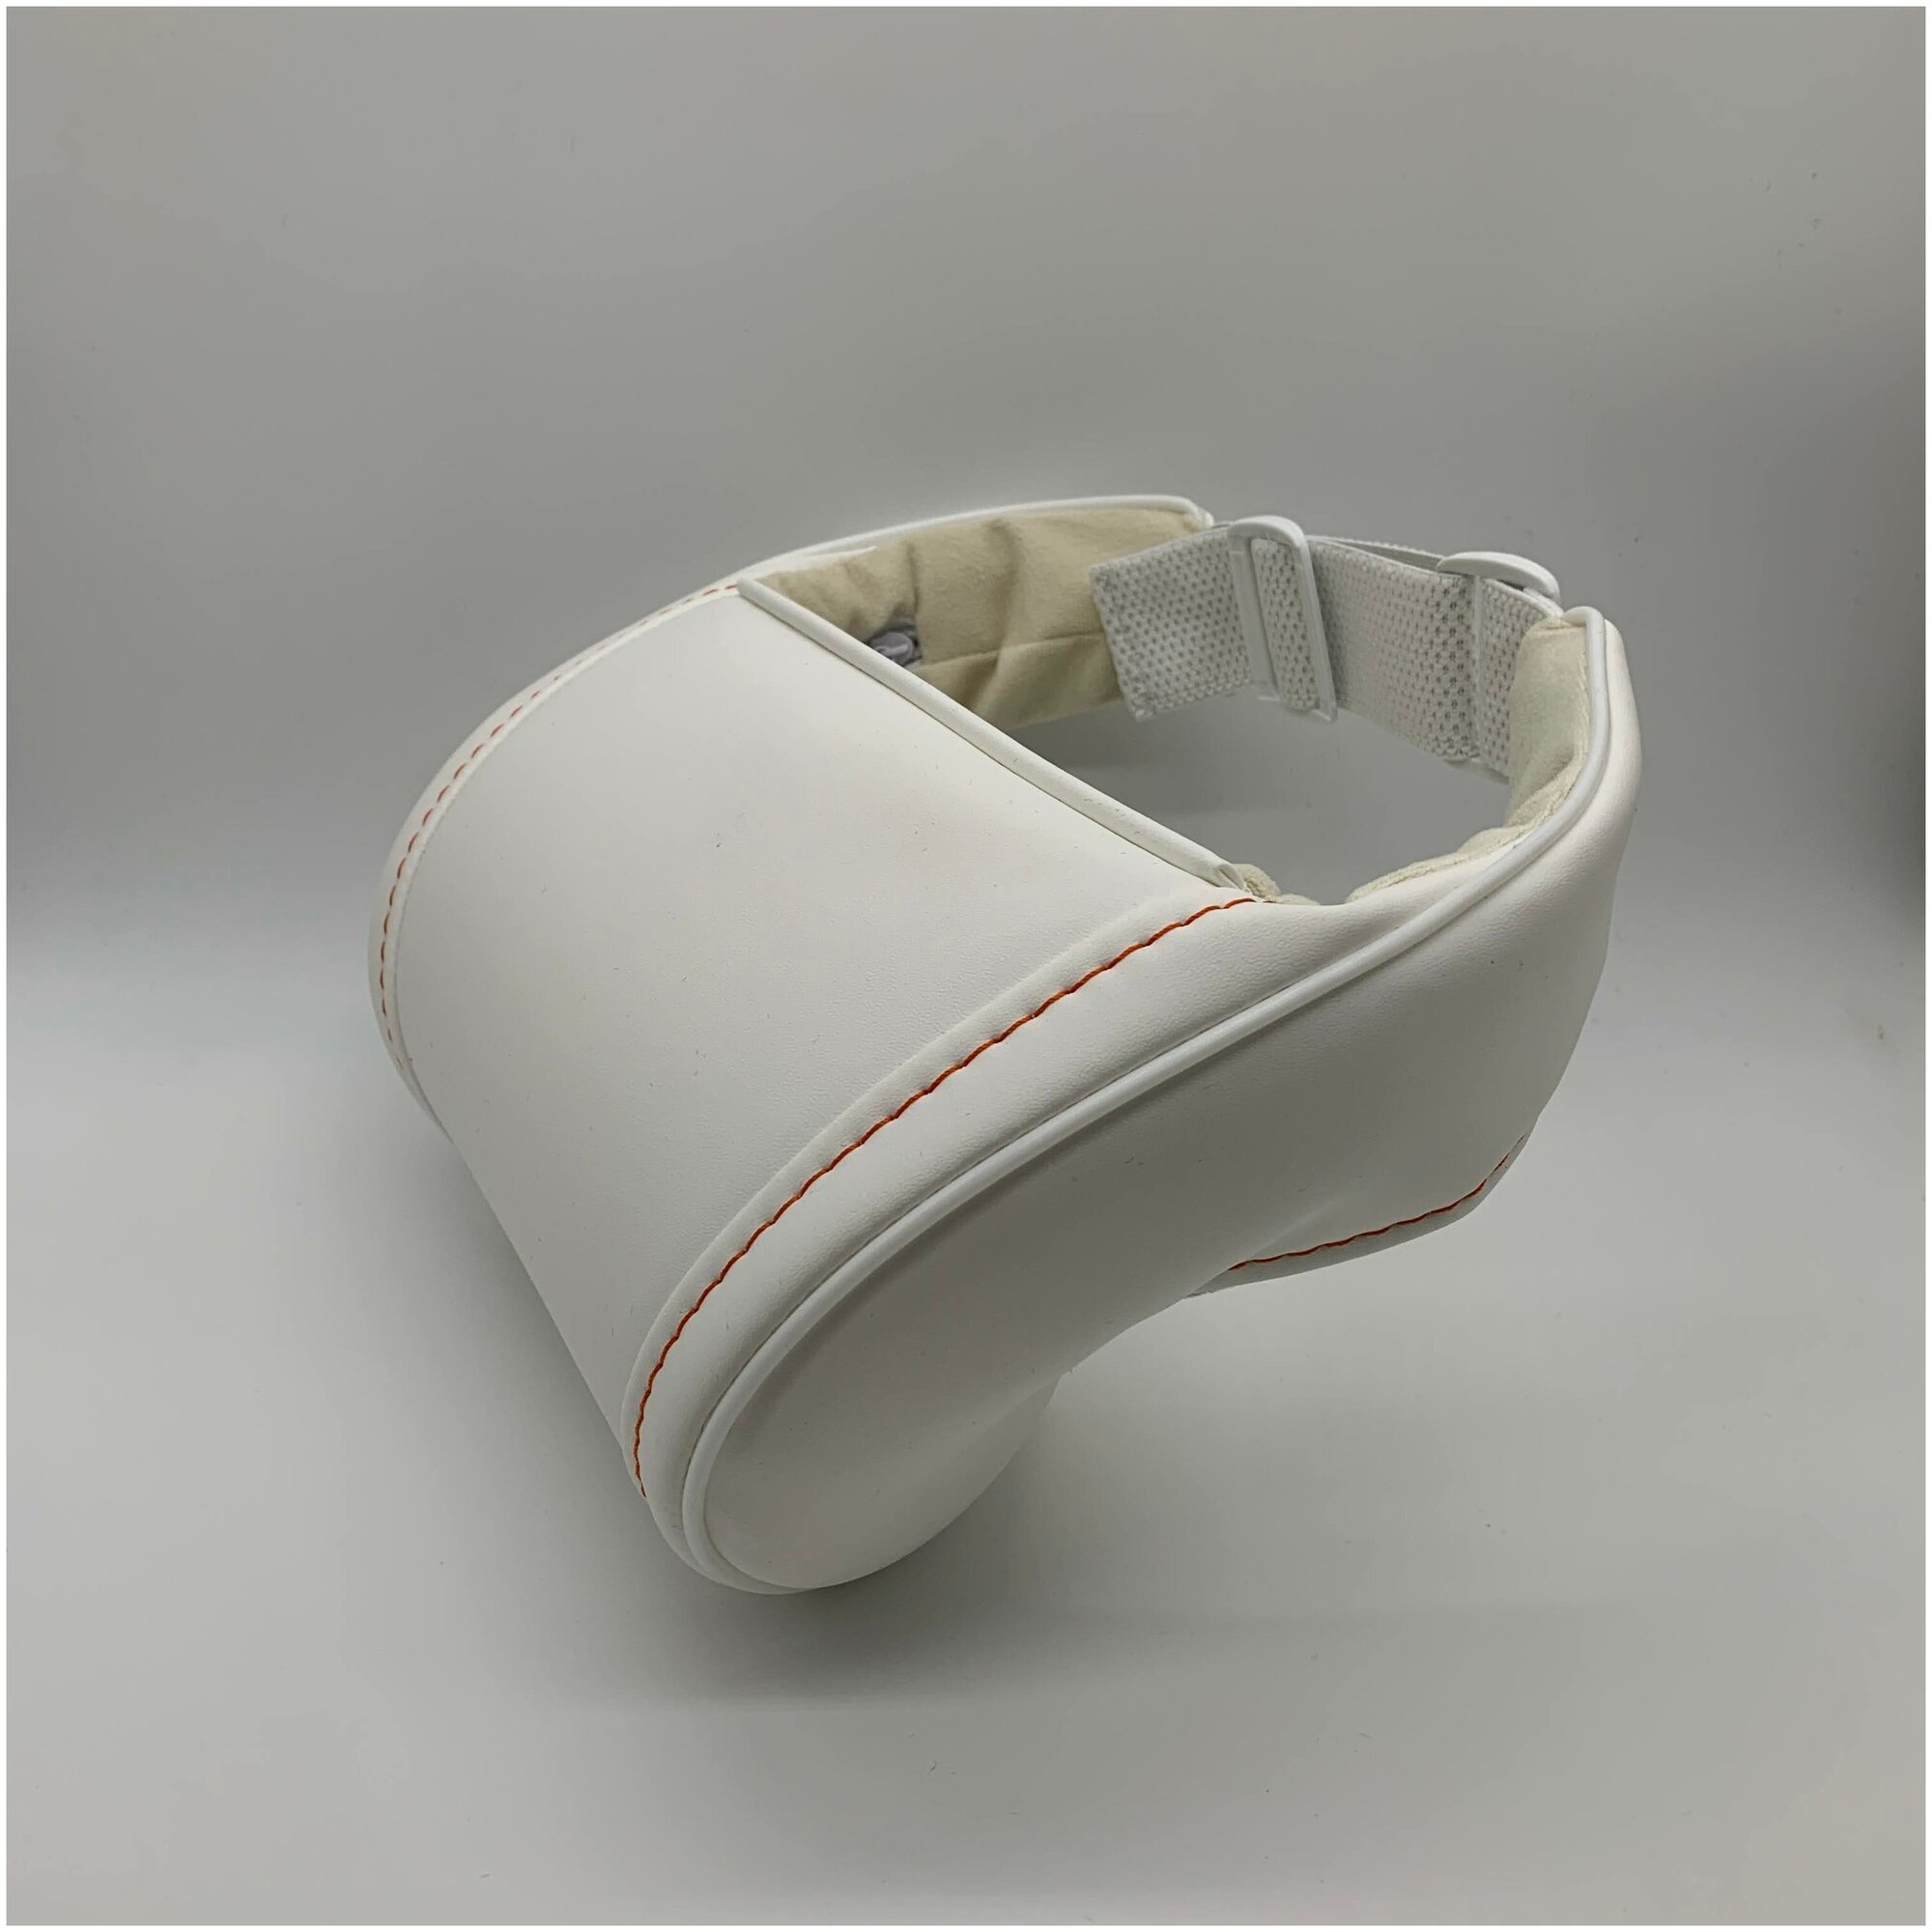 Белая автомобильная ортопедическая подушка для шеи на подголовник на сиденье. Оранжевая декоративная строчка. Экокожа премиум класса.